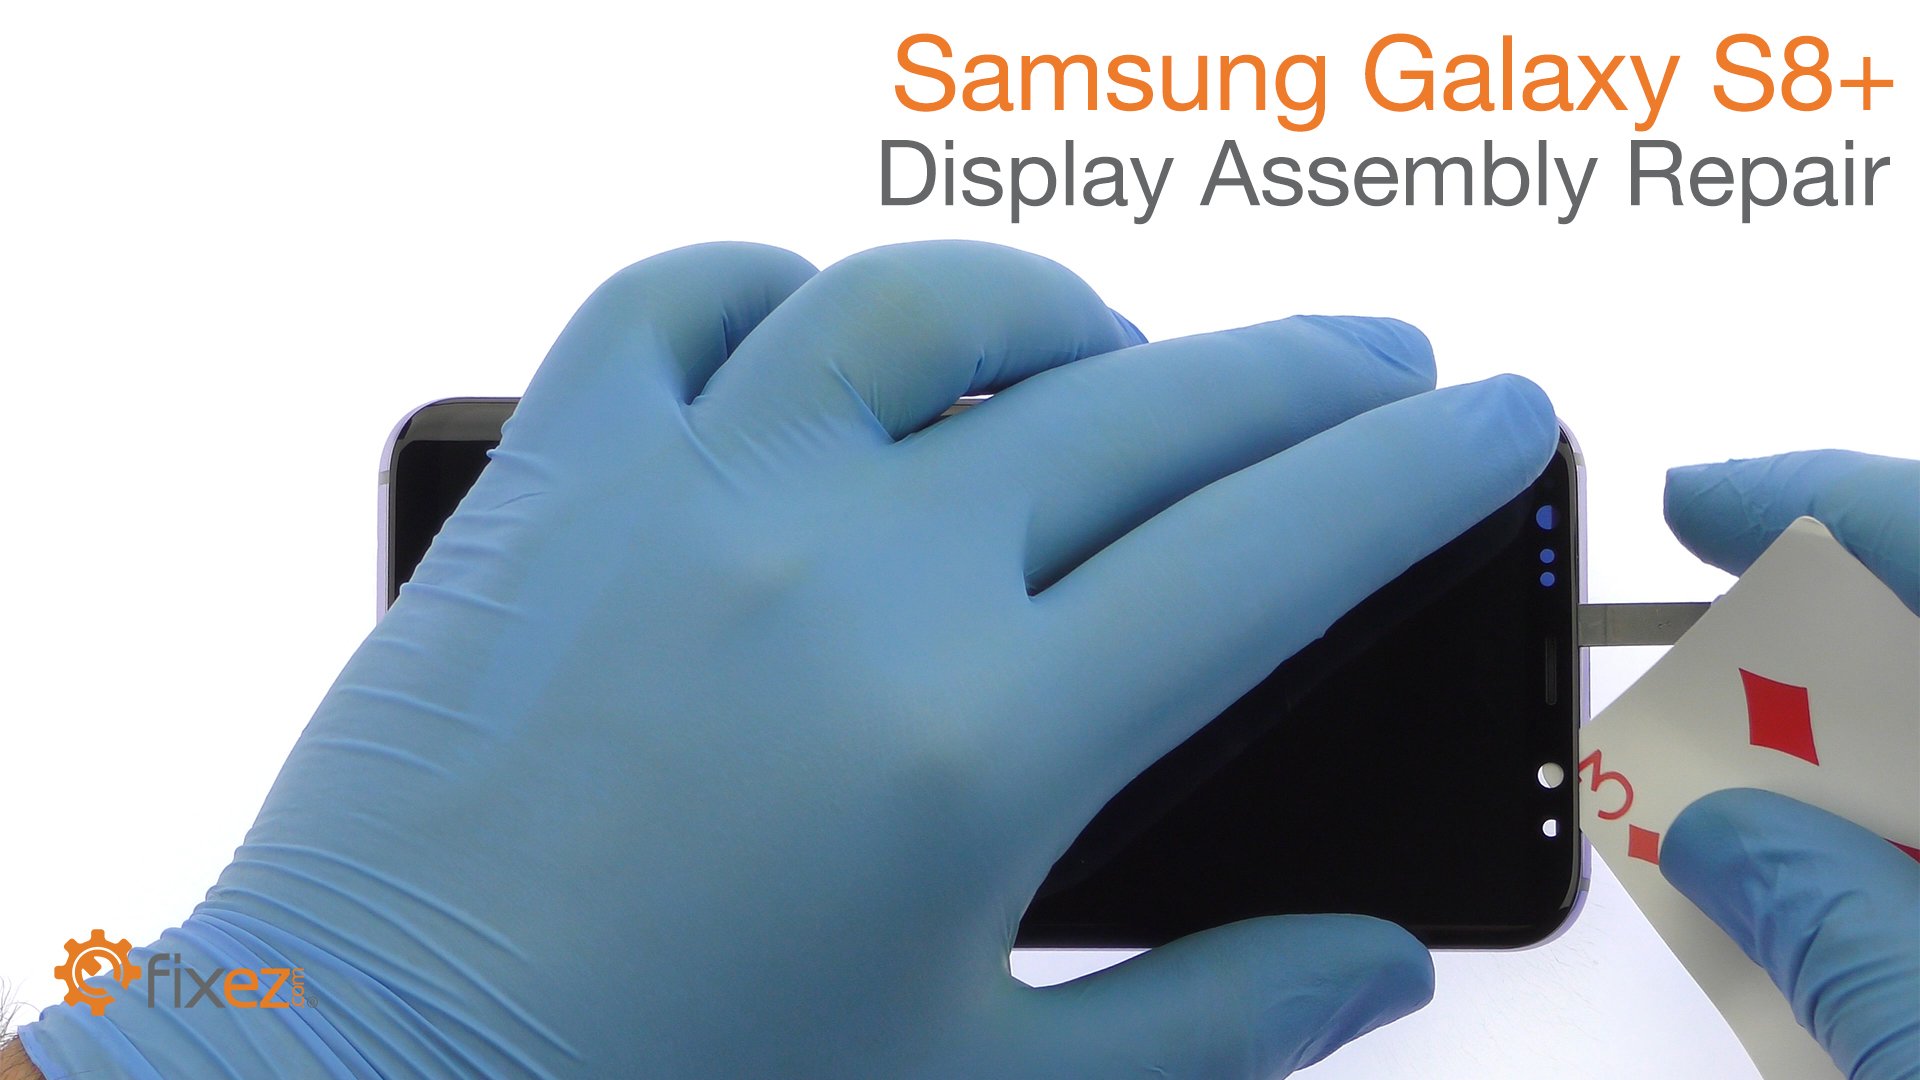 Samsung Galaxy S8+ Display Assembly Repair